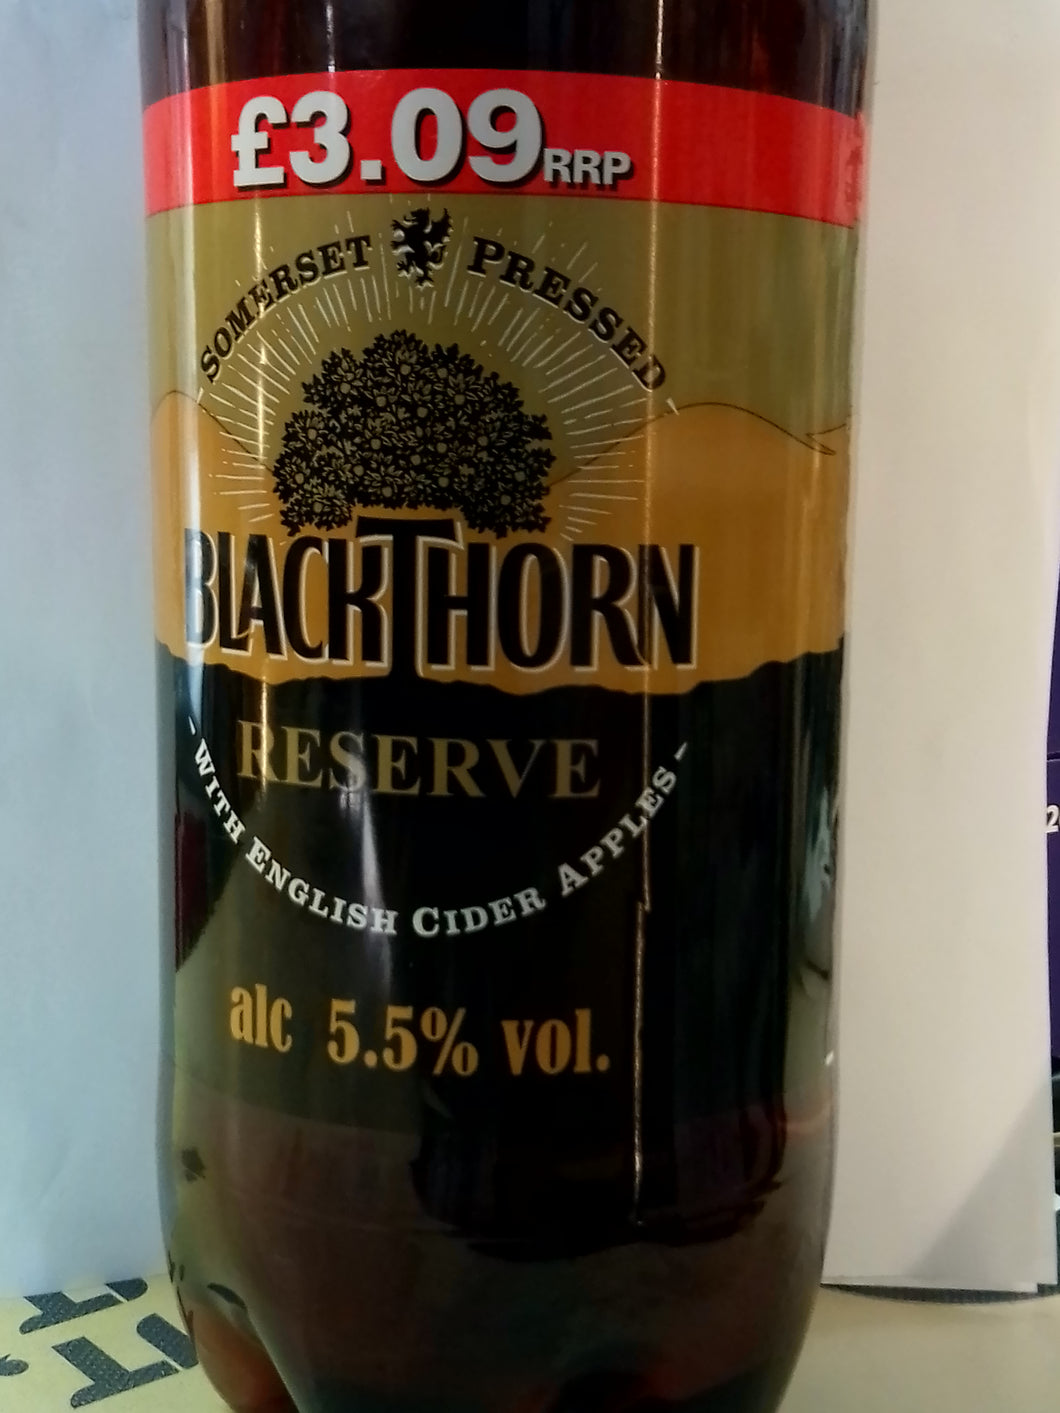 Blackthorn cider 2ltr